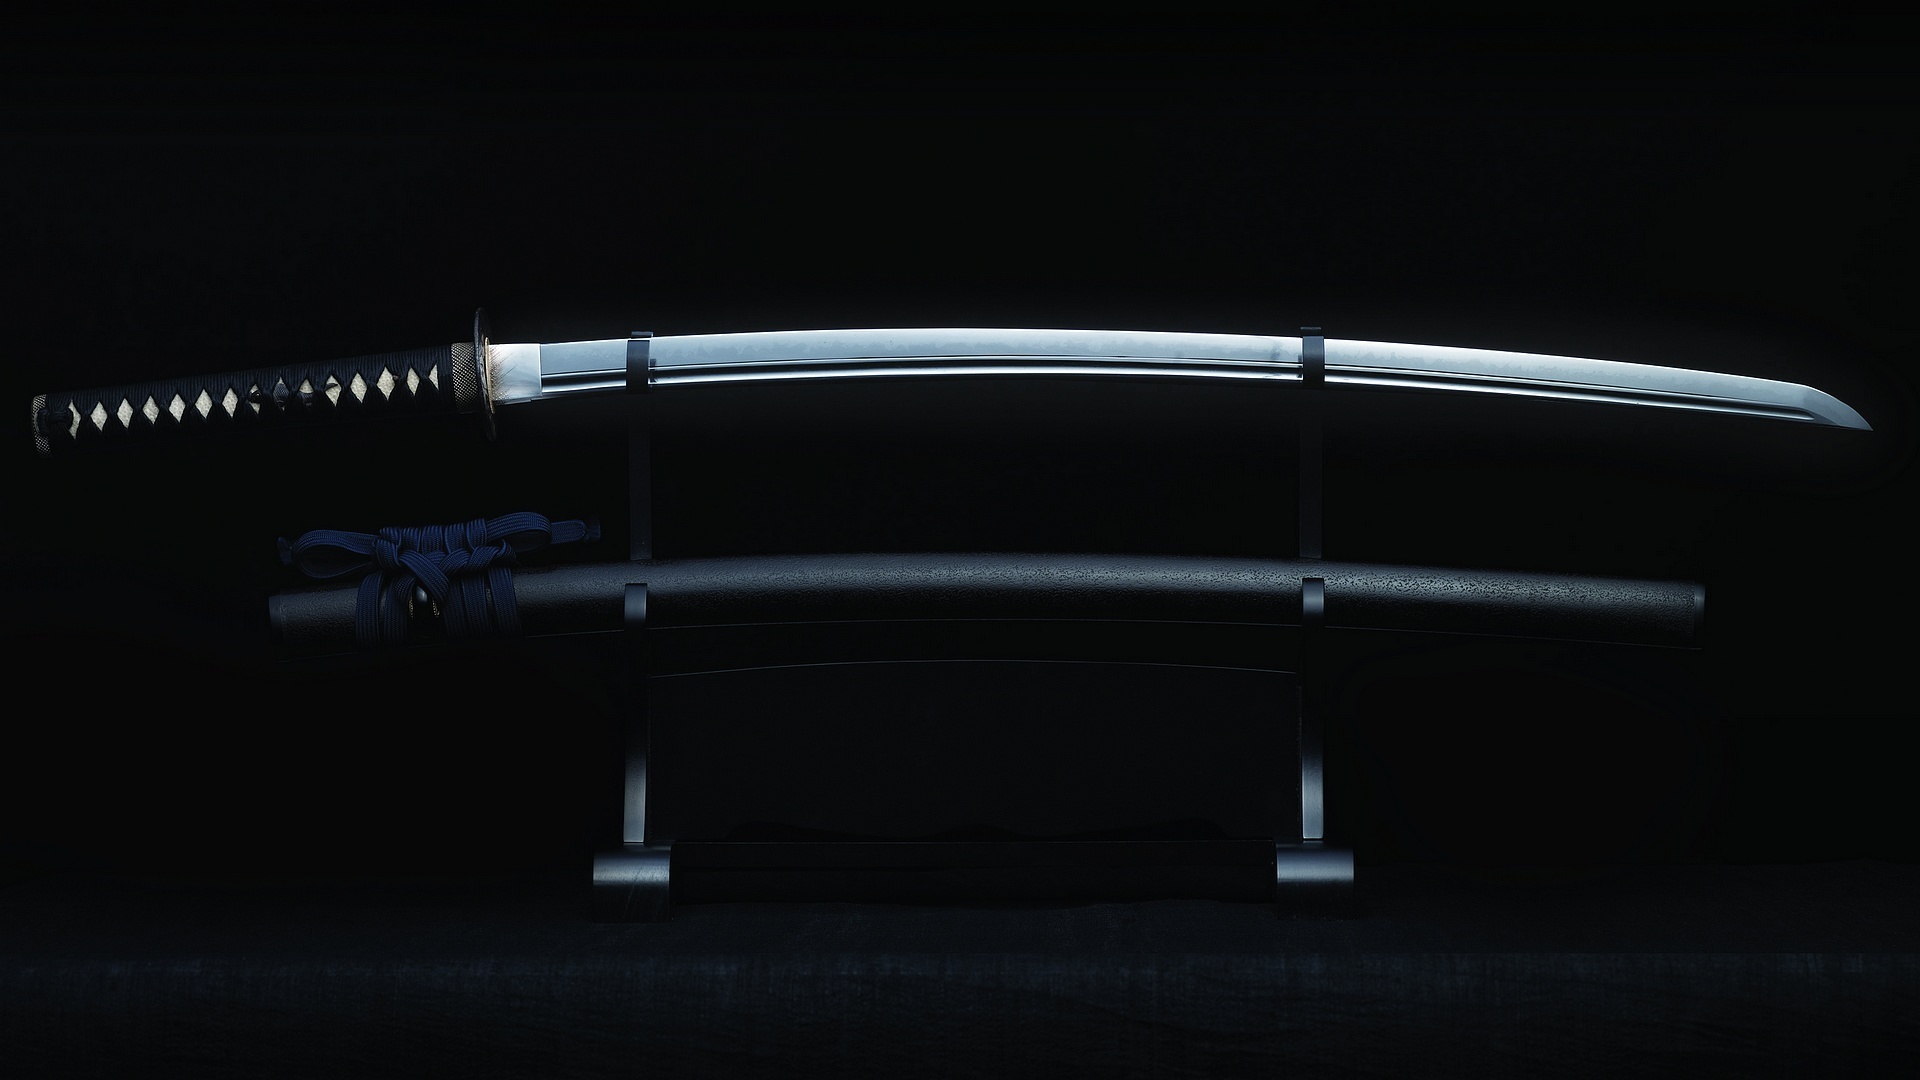 Man Made Sword 1920x1080